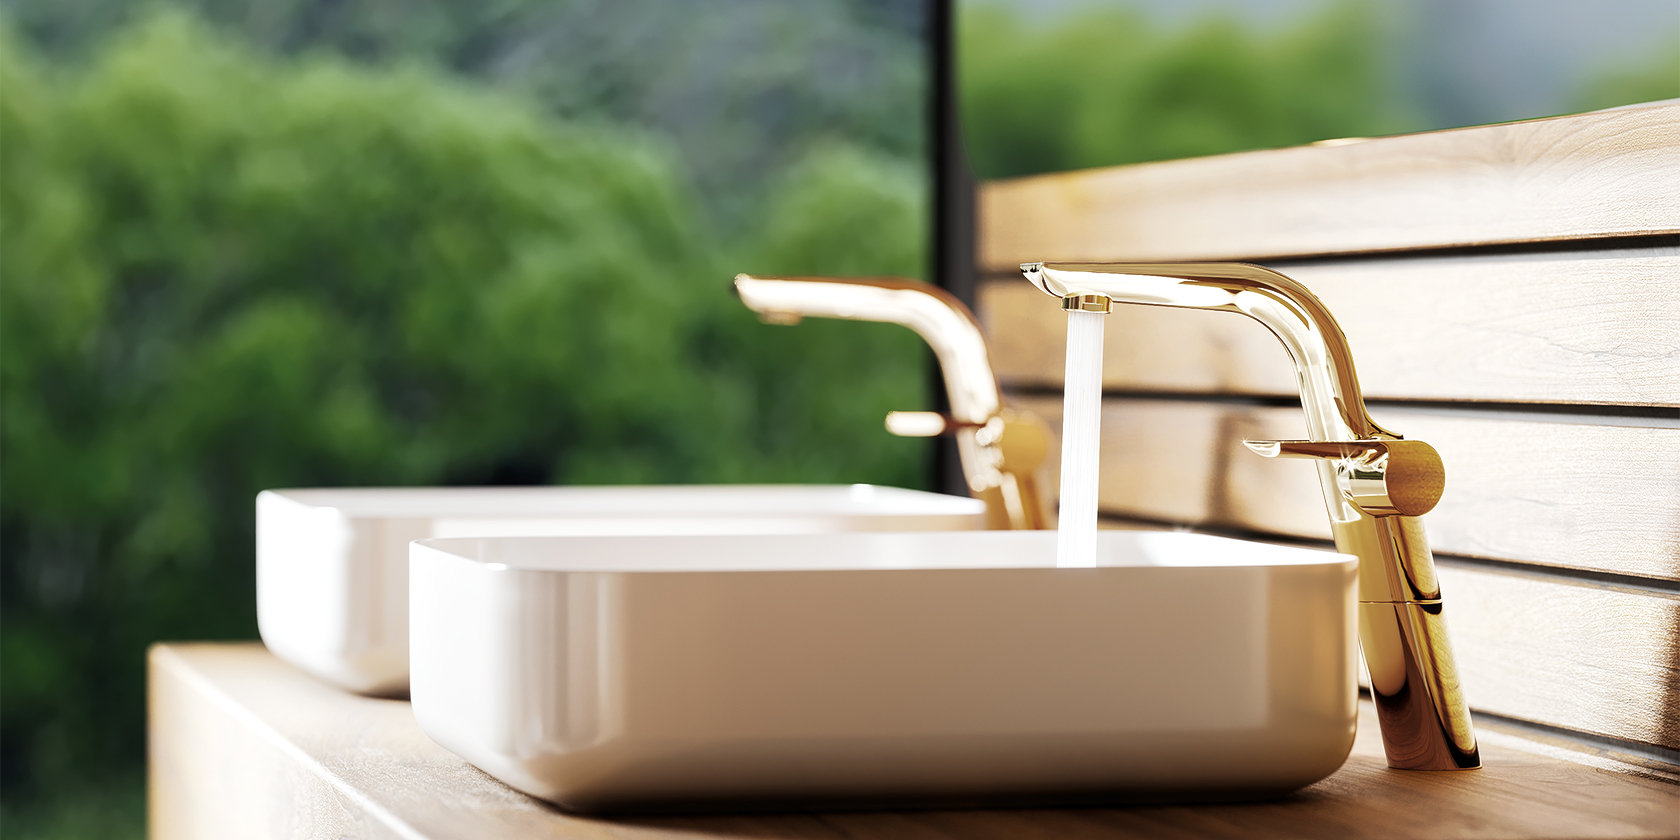 «Солнечный» люкс для современной ванной – Jörger Design представляет Exal в благородной латуни